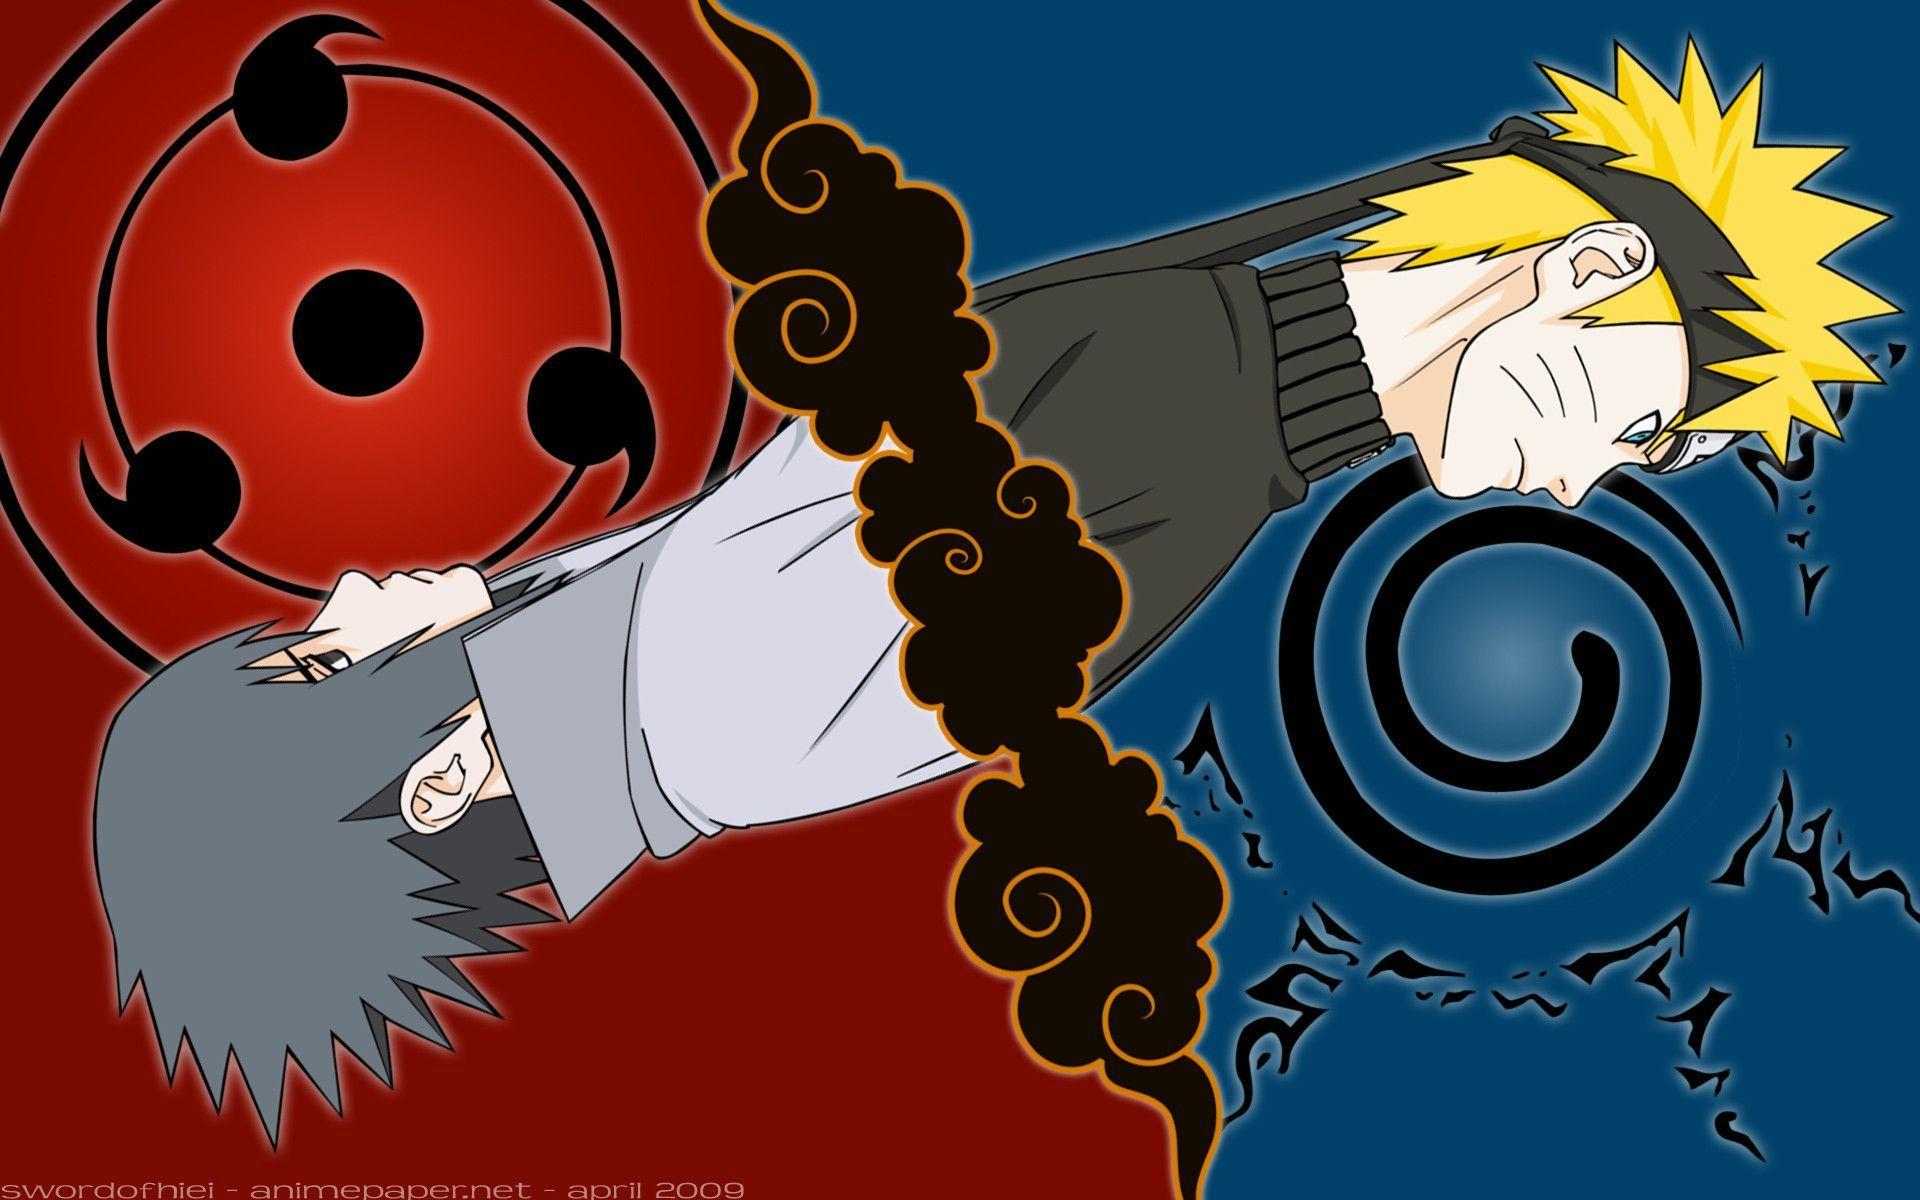 Naruto-Wallpaper-Tumblr naruto cartoon HD free wallpapers ...